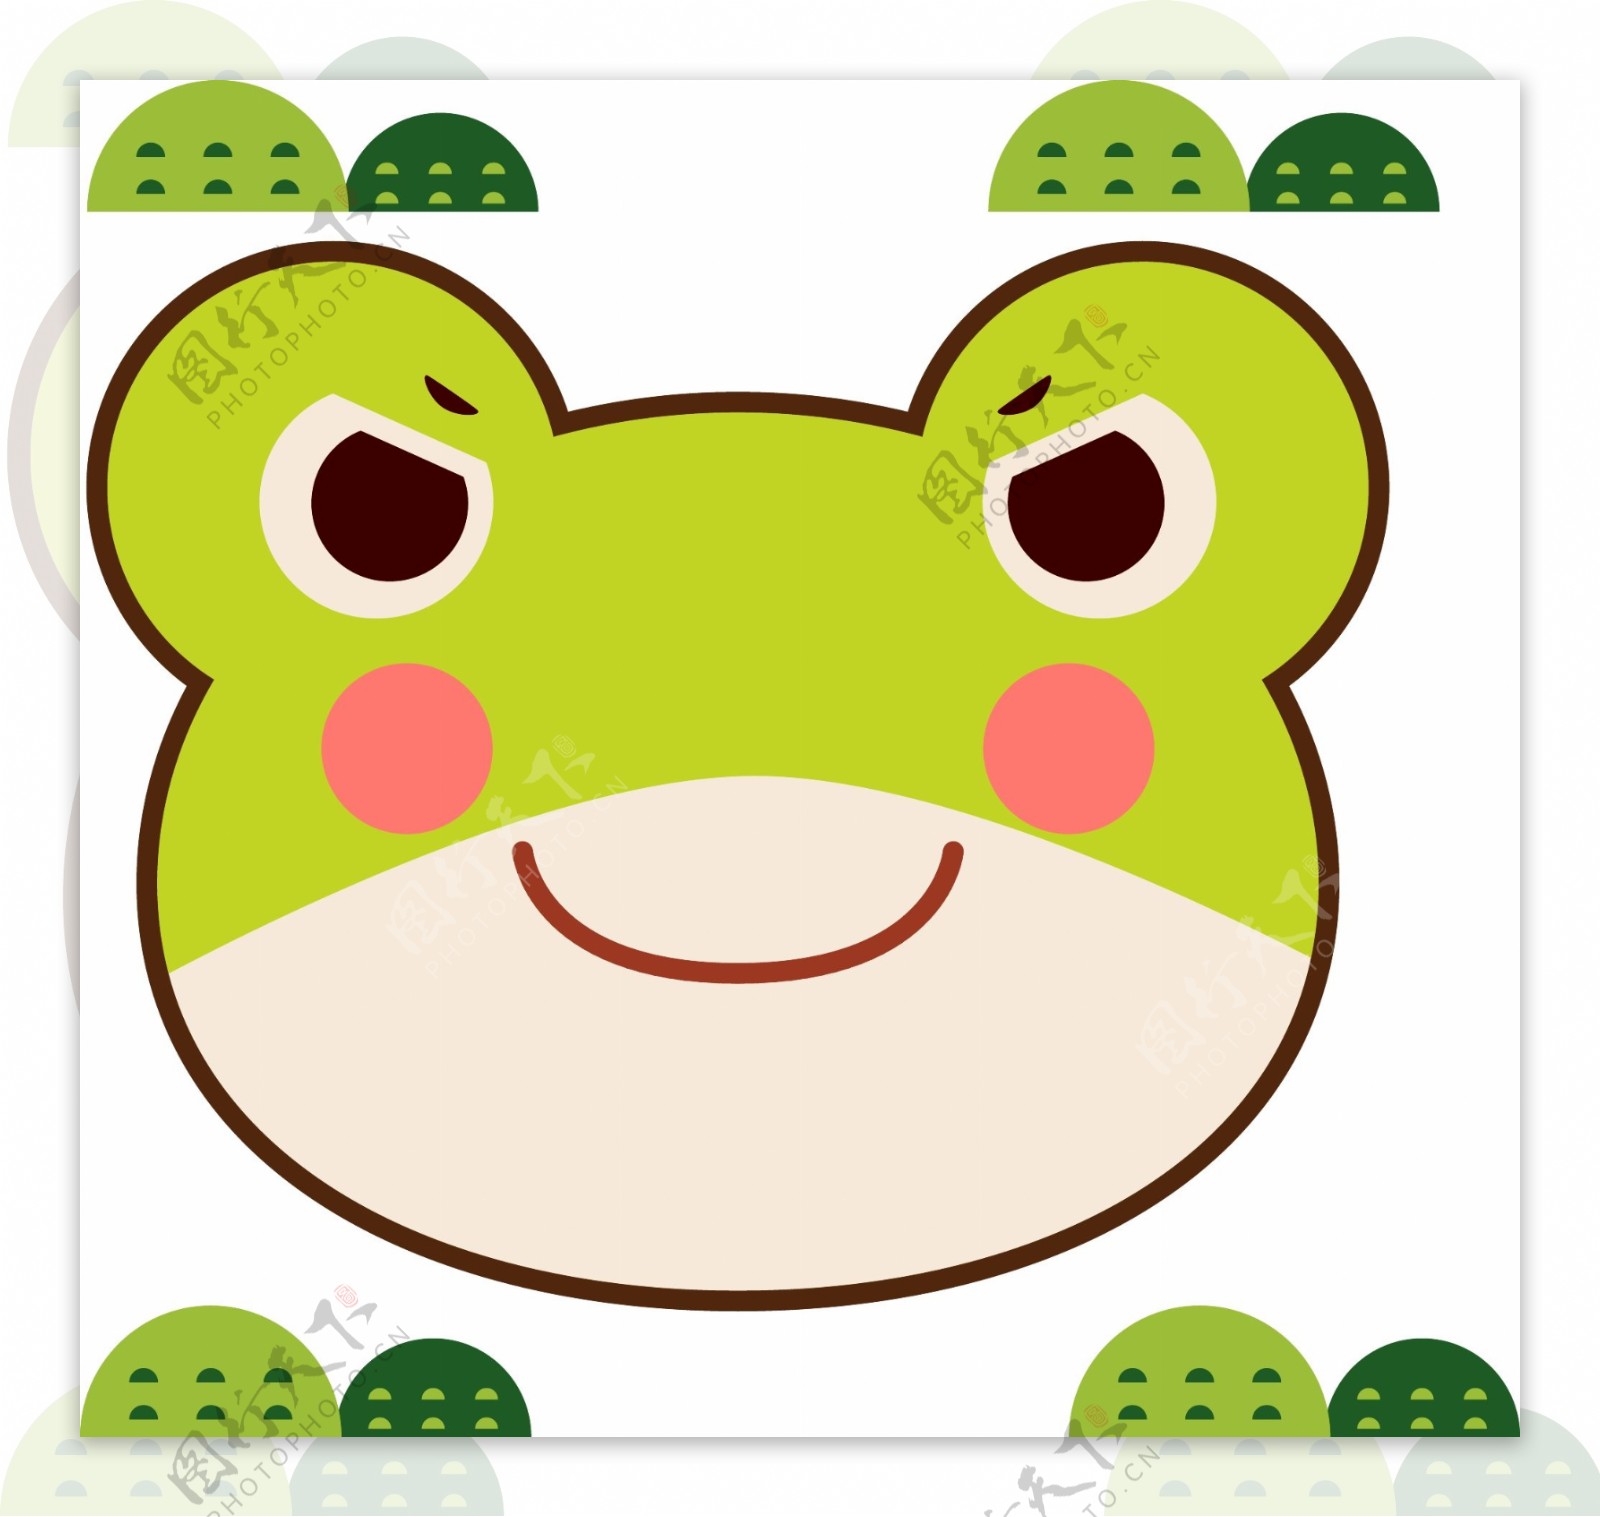 简笔画大全：小青蛙的绘图方法 看完你就知道了 - 天晴经验网